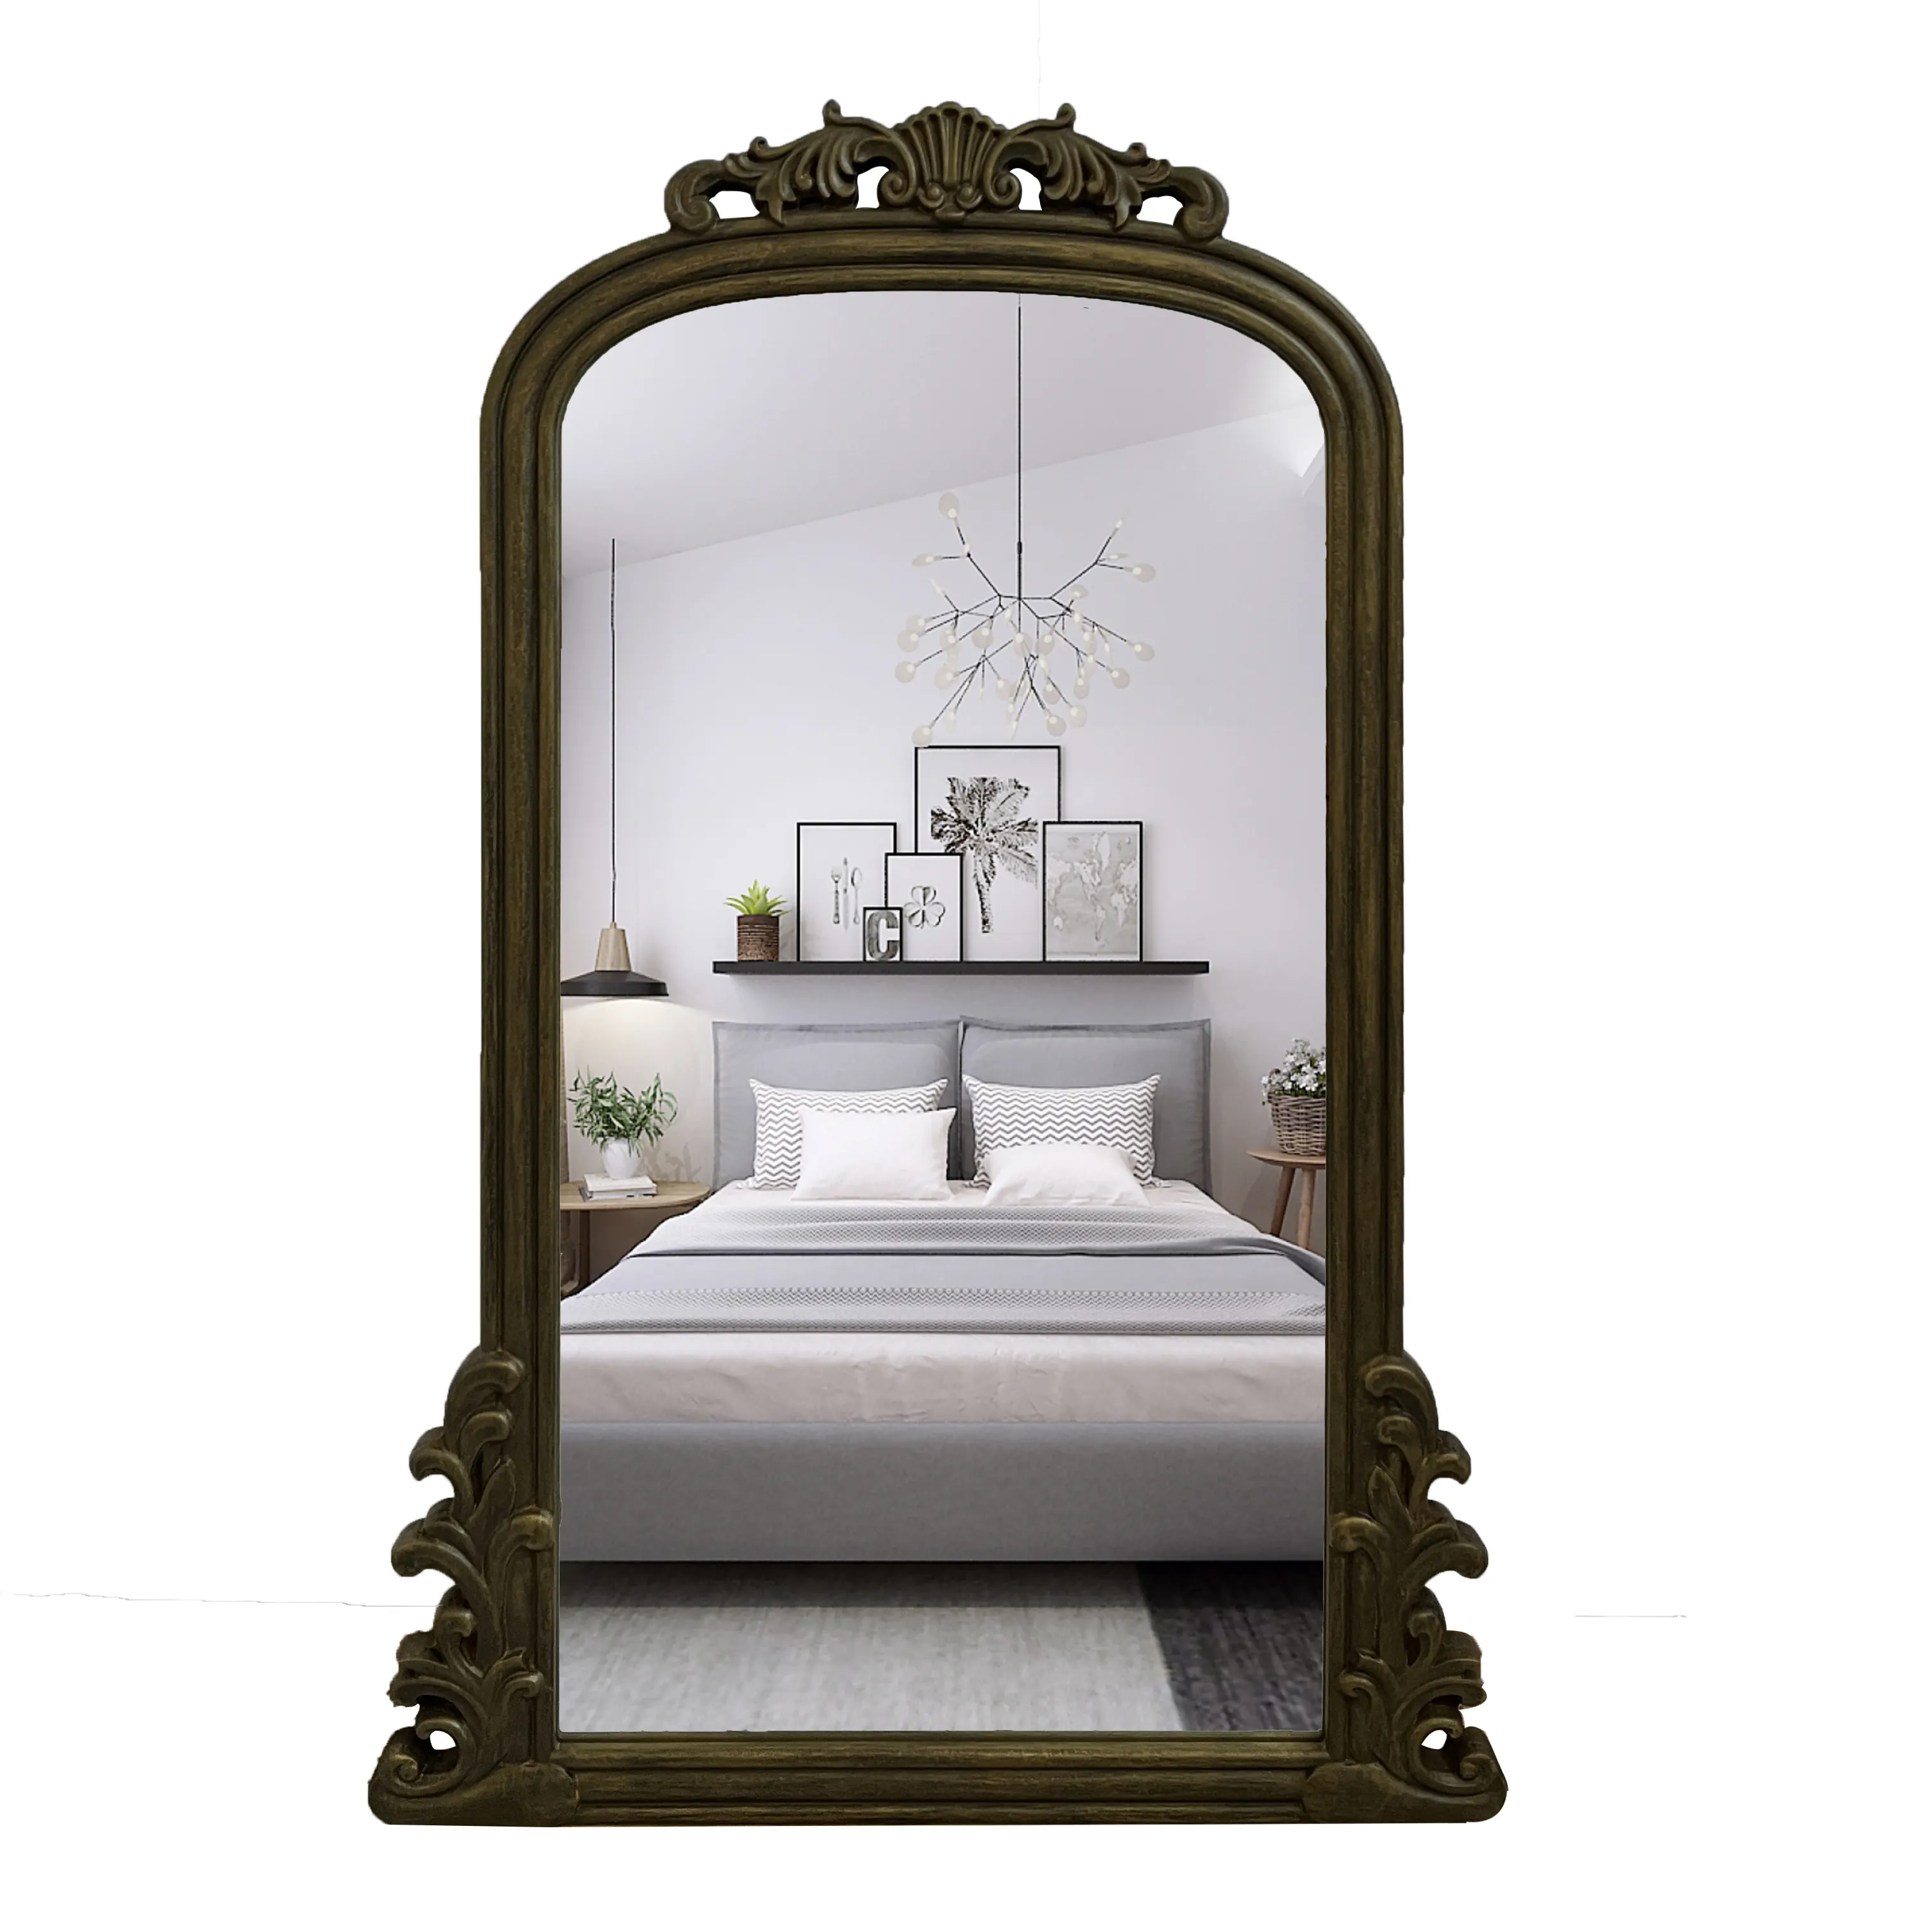 Arco grande antiguo de madera enmarcado decoración del hogar personalizado de gran tamaño de cuerpo largo vestidor espejo de cuerpo entero espejo de pared espejo Spiegel